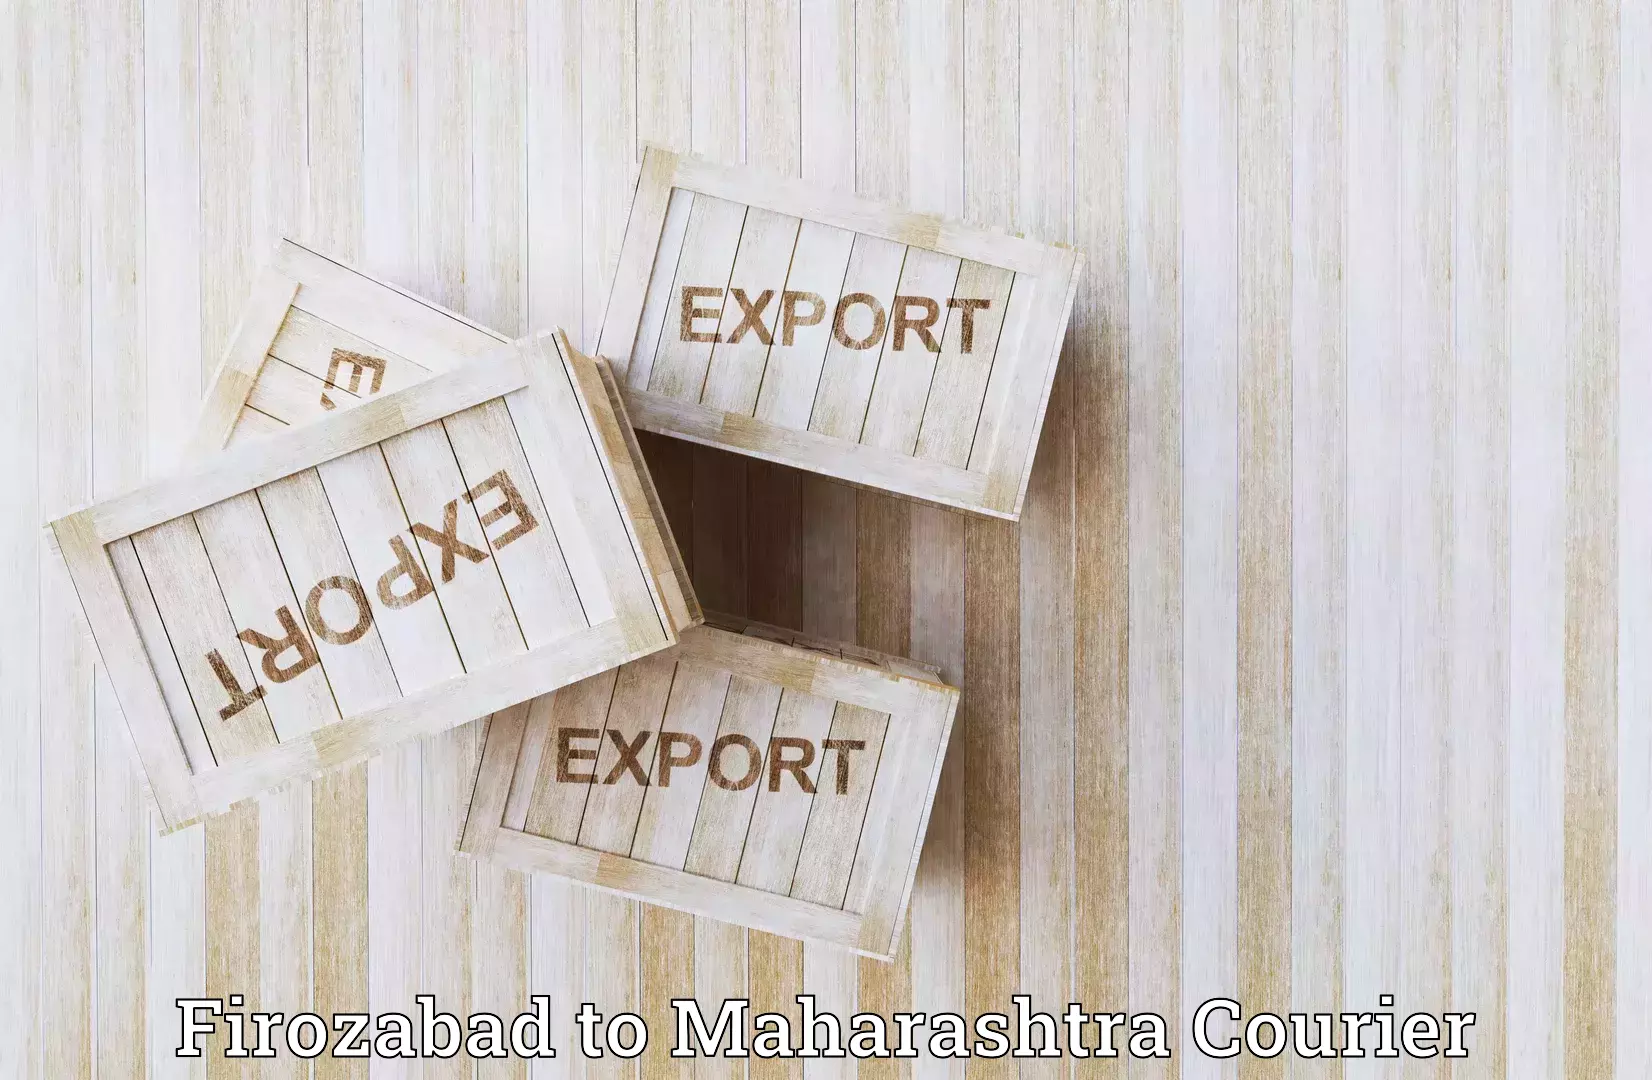 Seamless shipping service Firozabad to Maharashtra